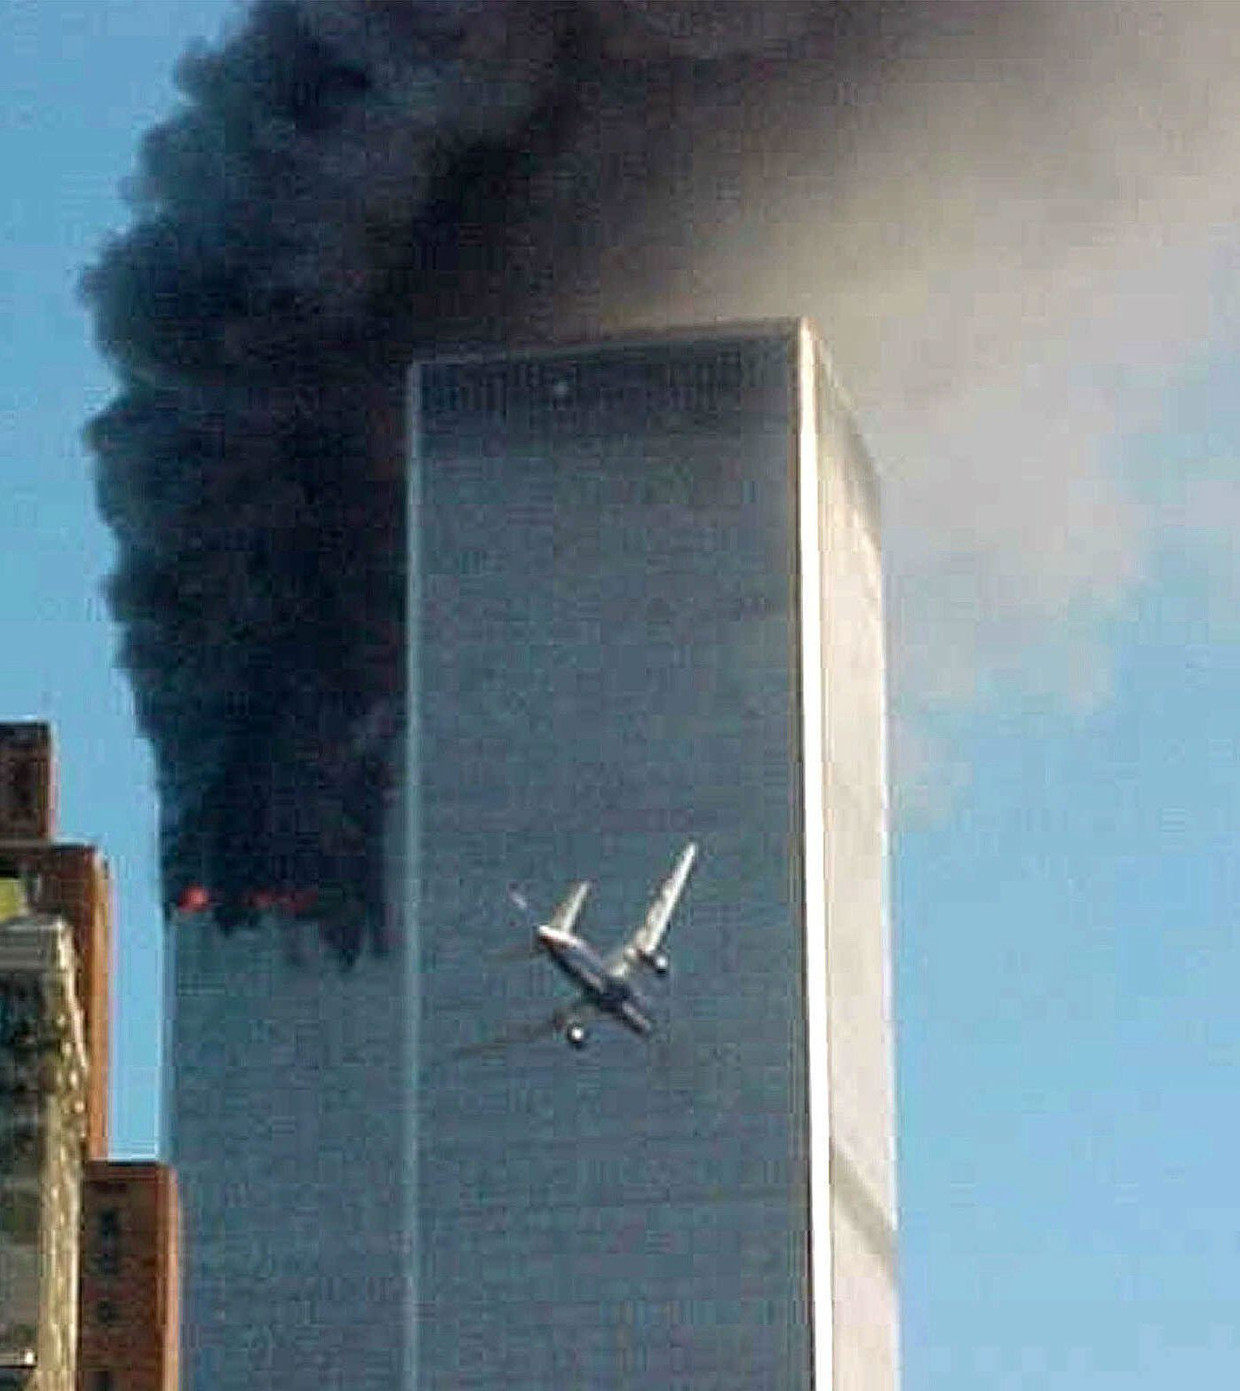 Dit beeld van 9/11, van het tweede vliegtuig dat de Twin Towers in New York binnenvliegt, is mogelijk ’s werelds bekendste historische foto. De maker is geen fotograaf, maar een verpleegkundige uit Arkansas, Carmen Taylor, die op bezoek was in de stad. Die ochtend stond ze net op een veerpont naar het Vrijheidsbeeld. Ze stuurde haar foto op advies van een omstander naar een lokale nieuwszender die hem verder verspreidde. 